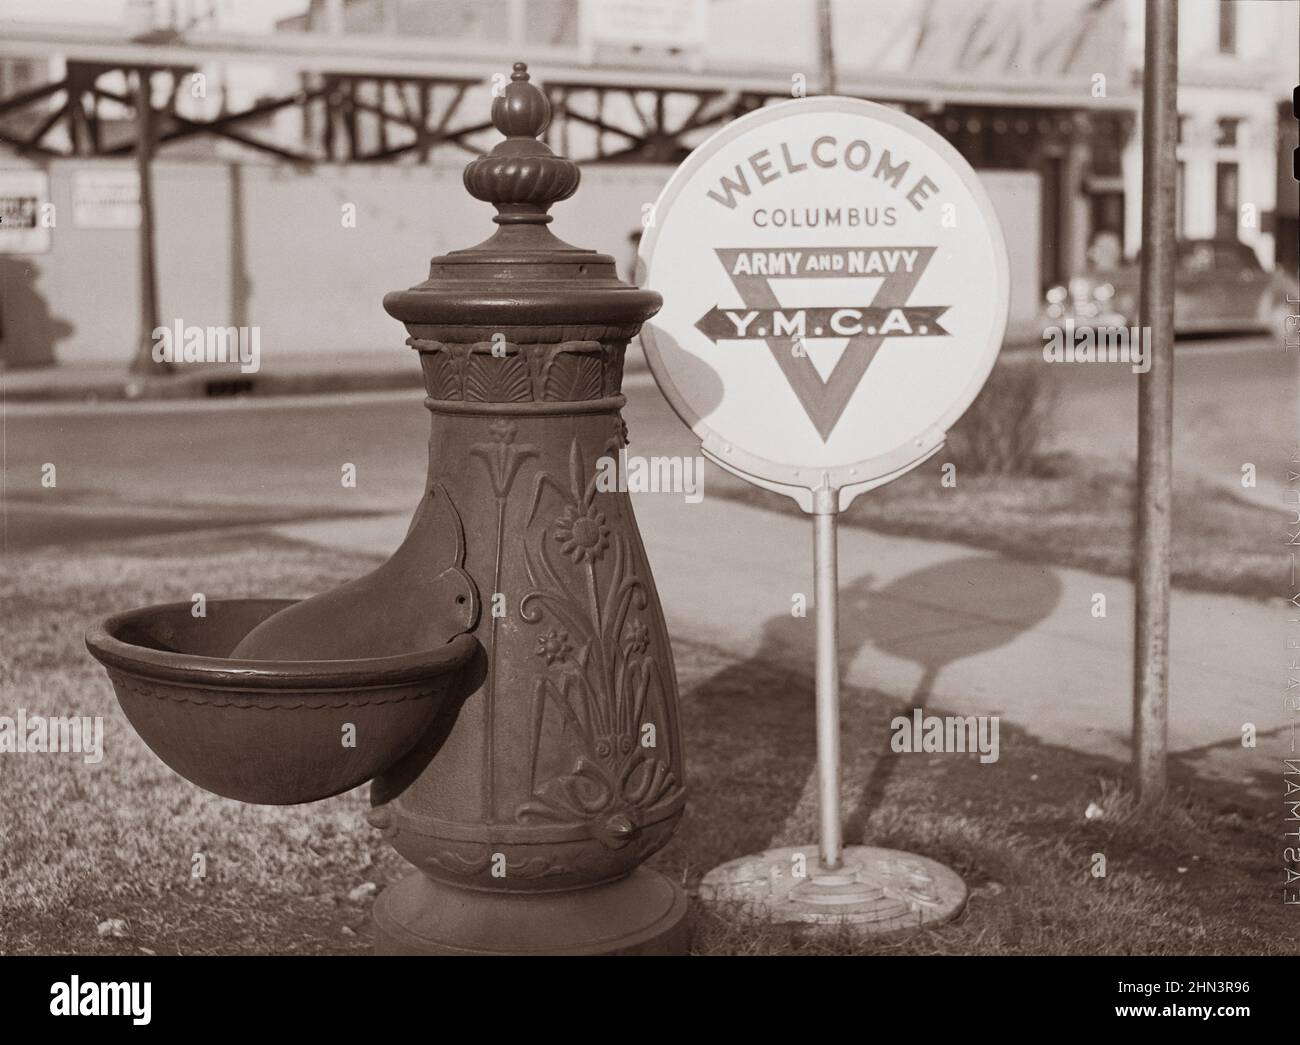 Vintage-Foto des amerikanischen Lebens im Jahr 1940s. Wassertrog und Y.M.C.A. (Young Mens Christian Association) Willkommensschild auf dem Platz im Zentrum der Stadt. Spalte Stockfoto